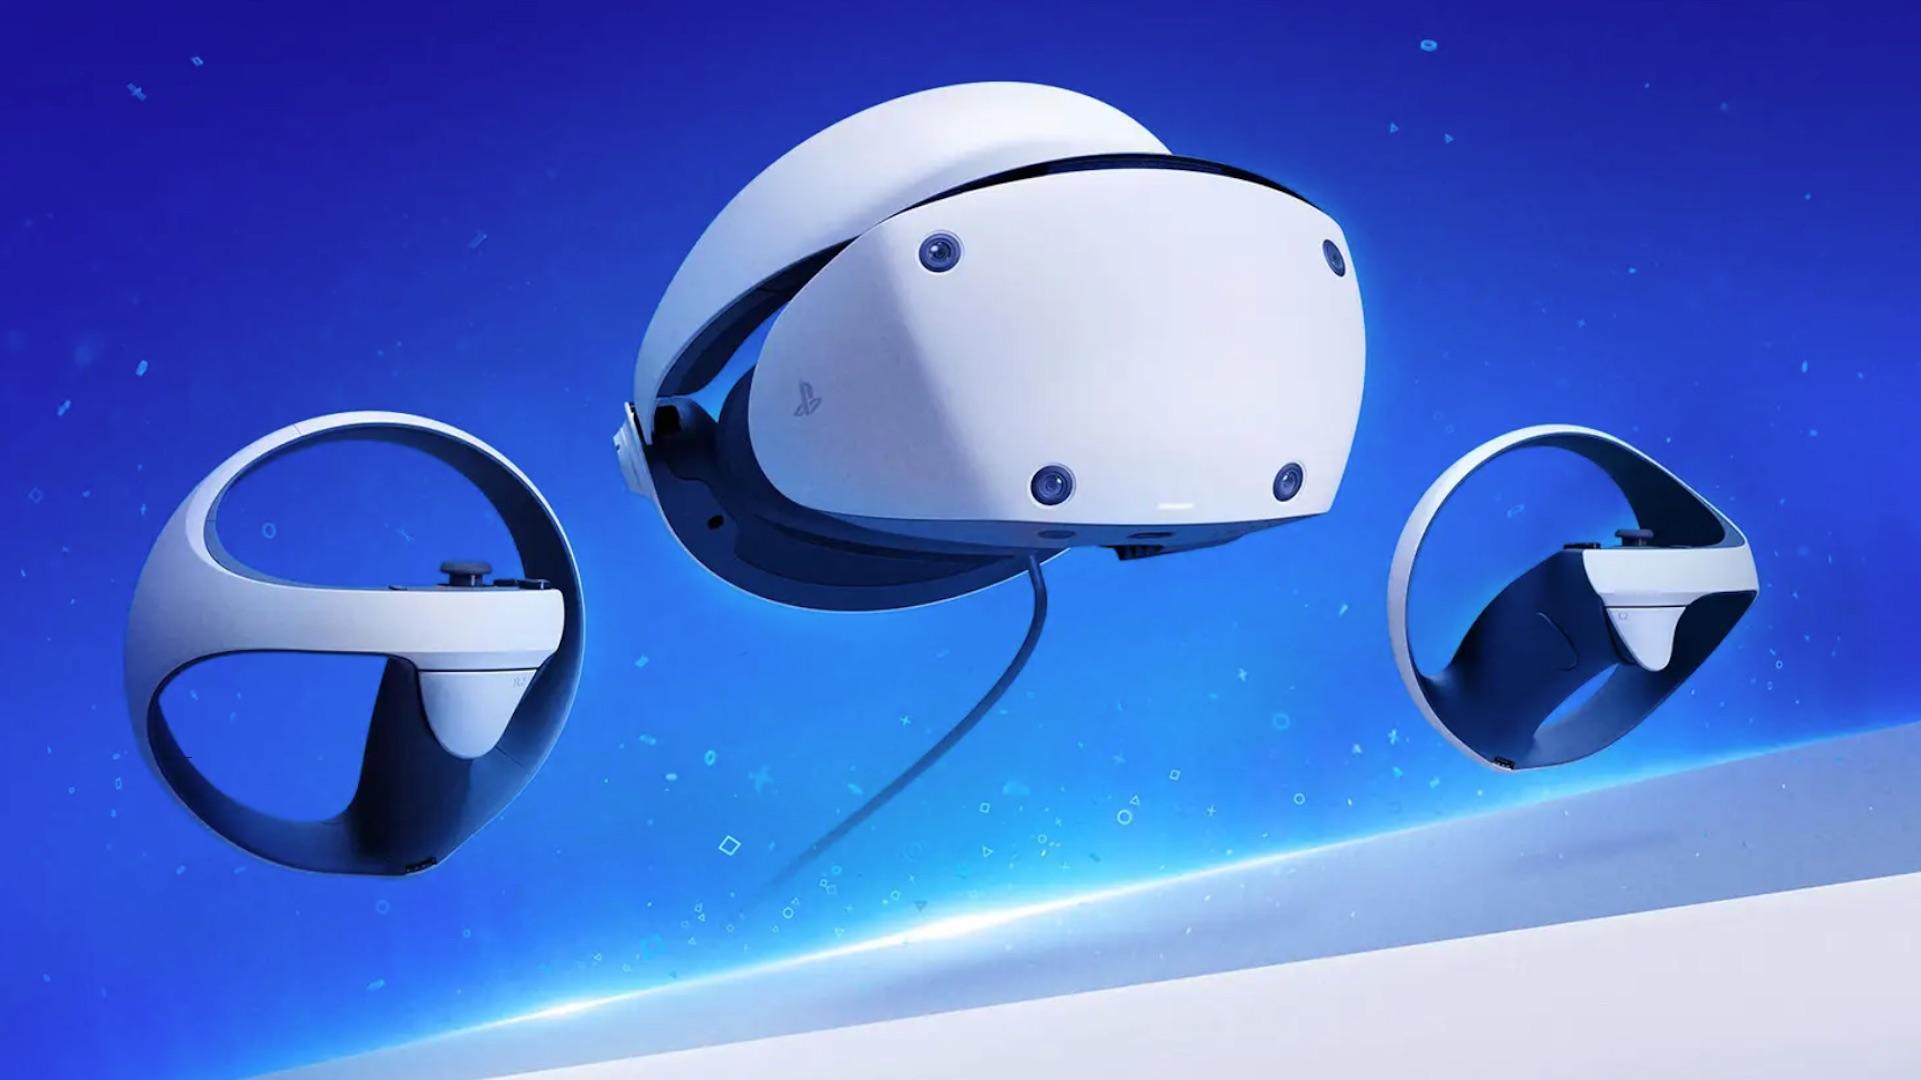 Oculus Go : meilleur prix, test et actualités - Les Numériques